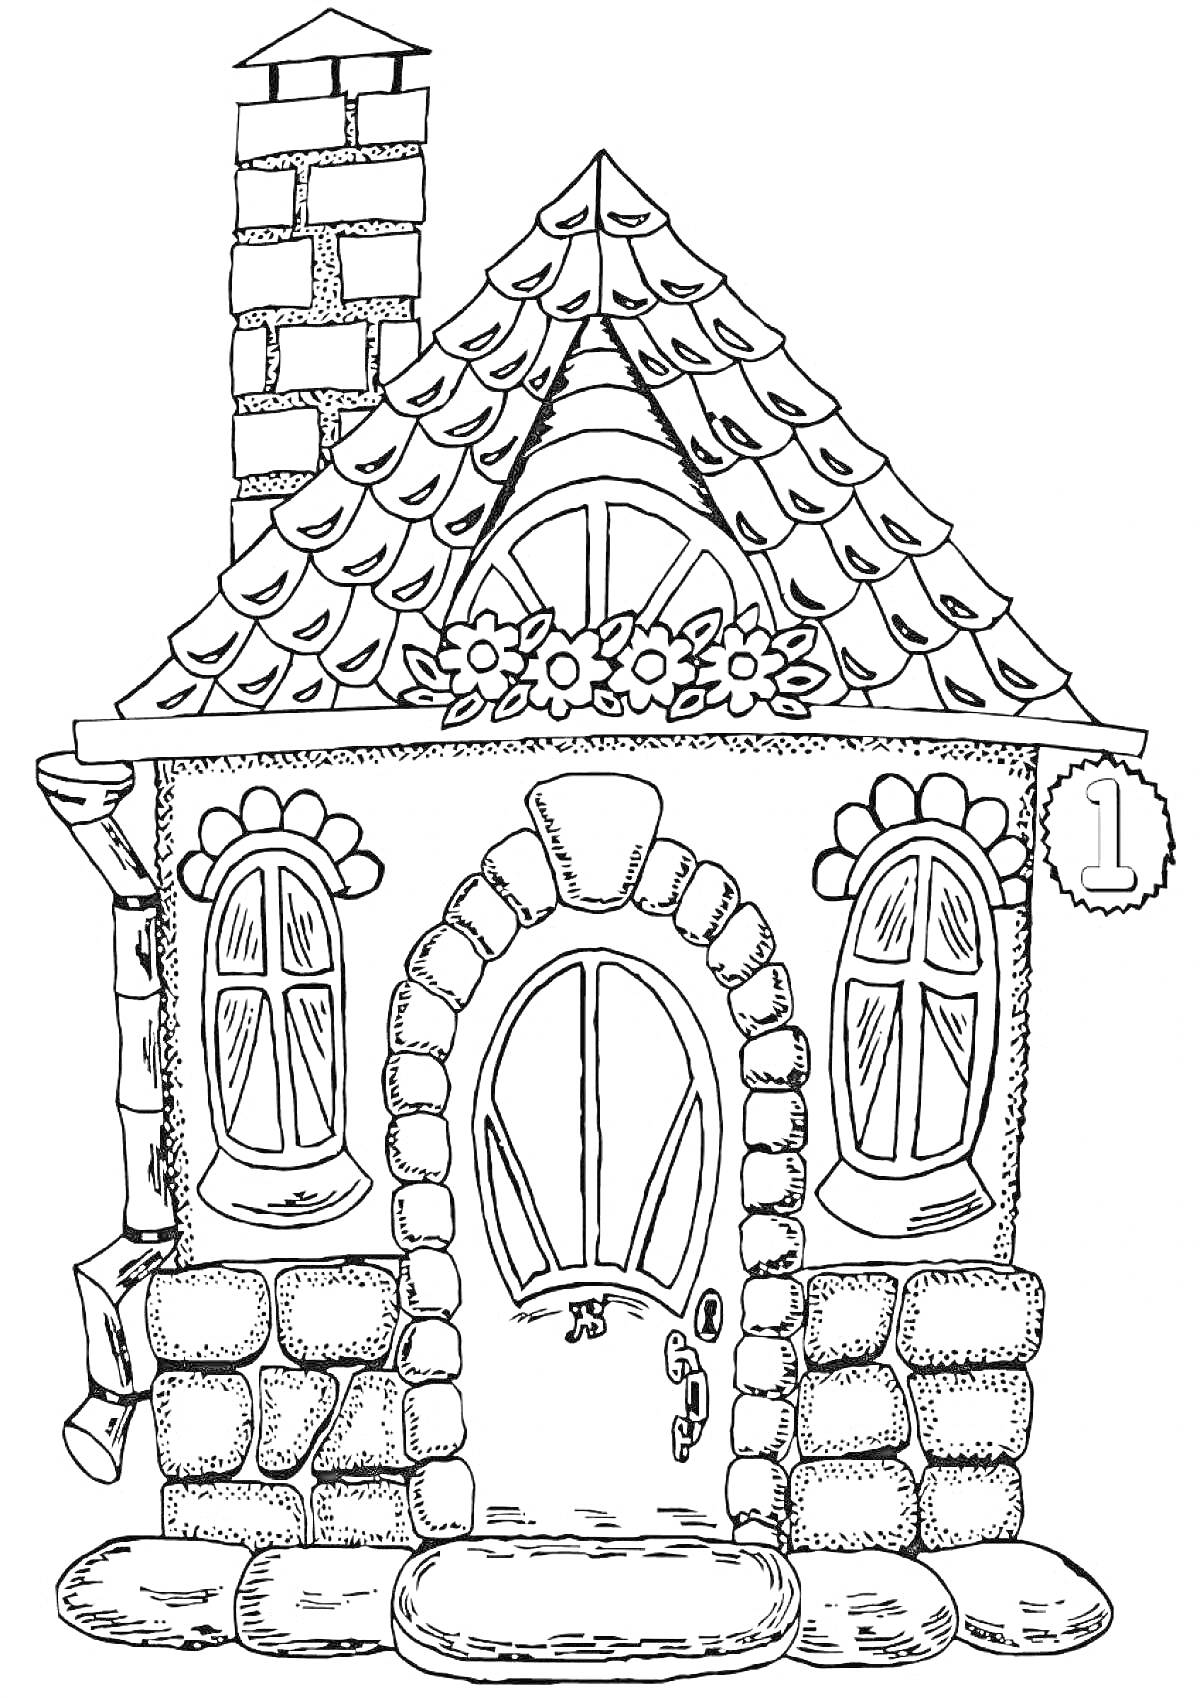 На раскраске изображено: Дом, Крыша, Черепица, Цветы, Дверь, Окна, Цифры